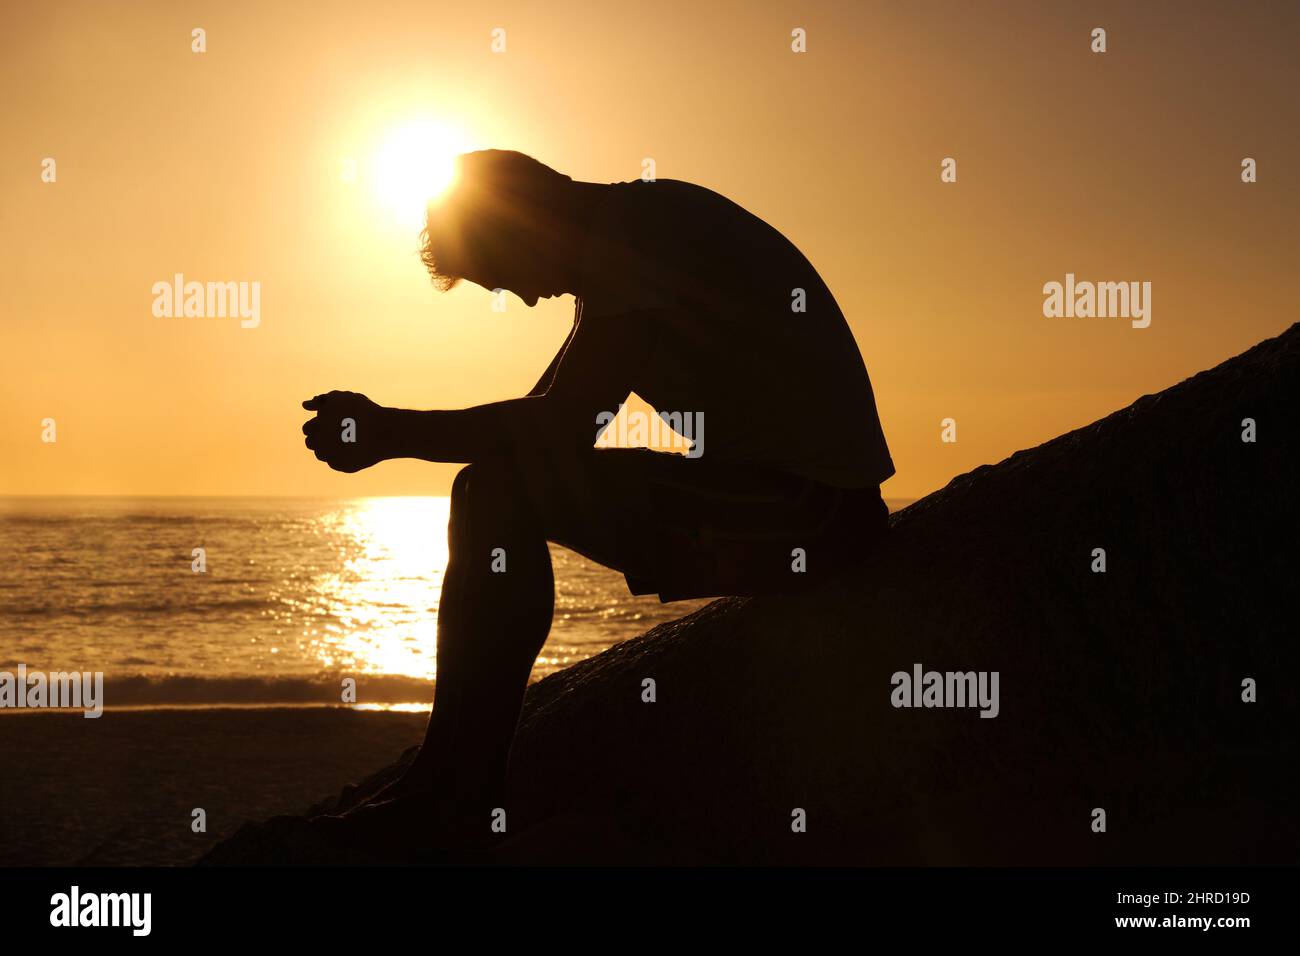 Contemplare il significato della vita. Silhouette di un uomo seduto in riva al mare e contemplare mentre si guarda verso il basso. Foto Stock